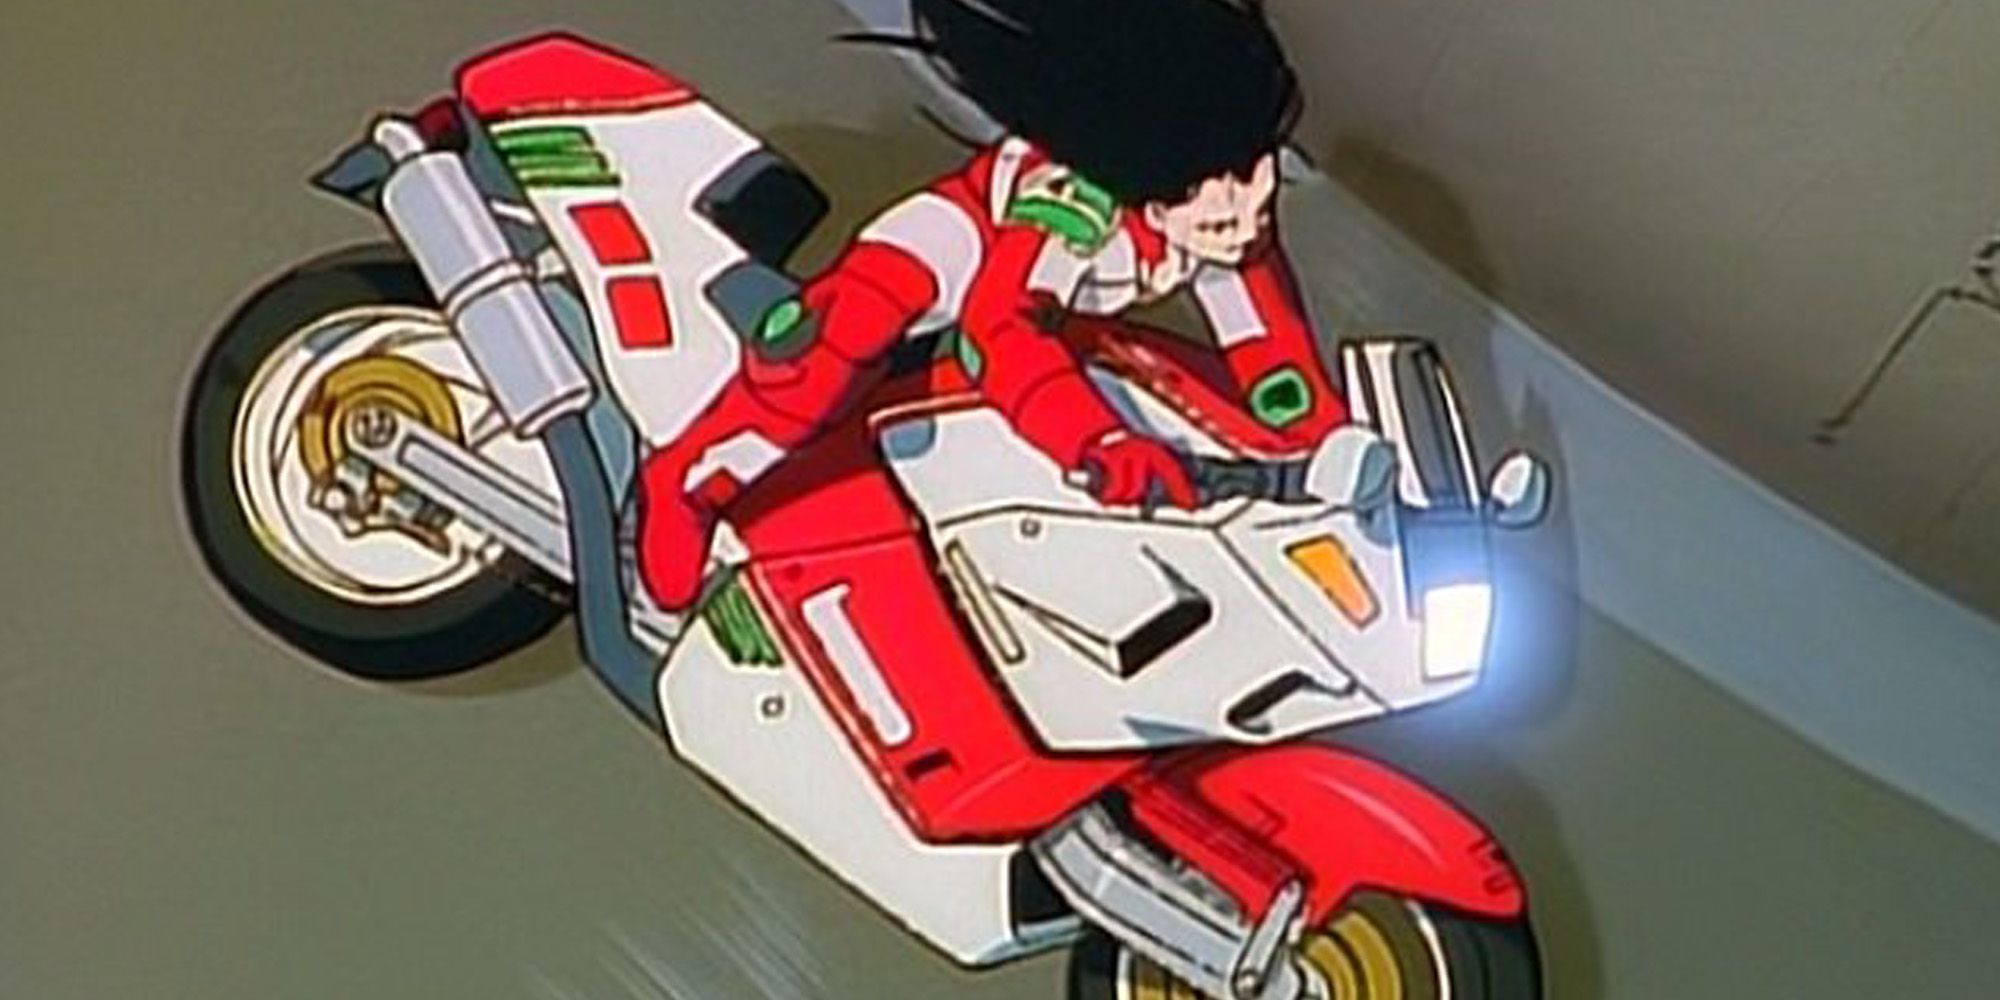 Anime Motorcycle Club - Gallos Locos